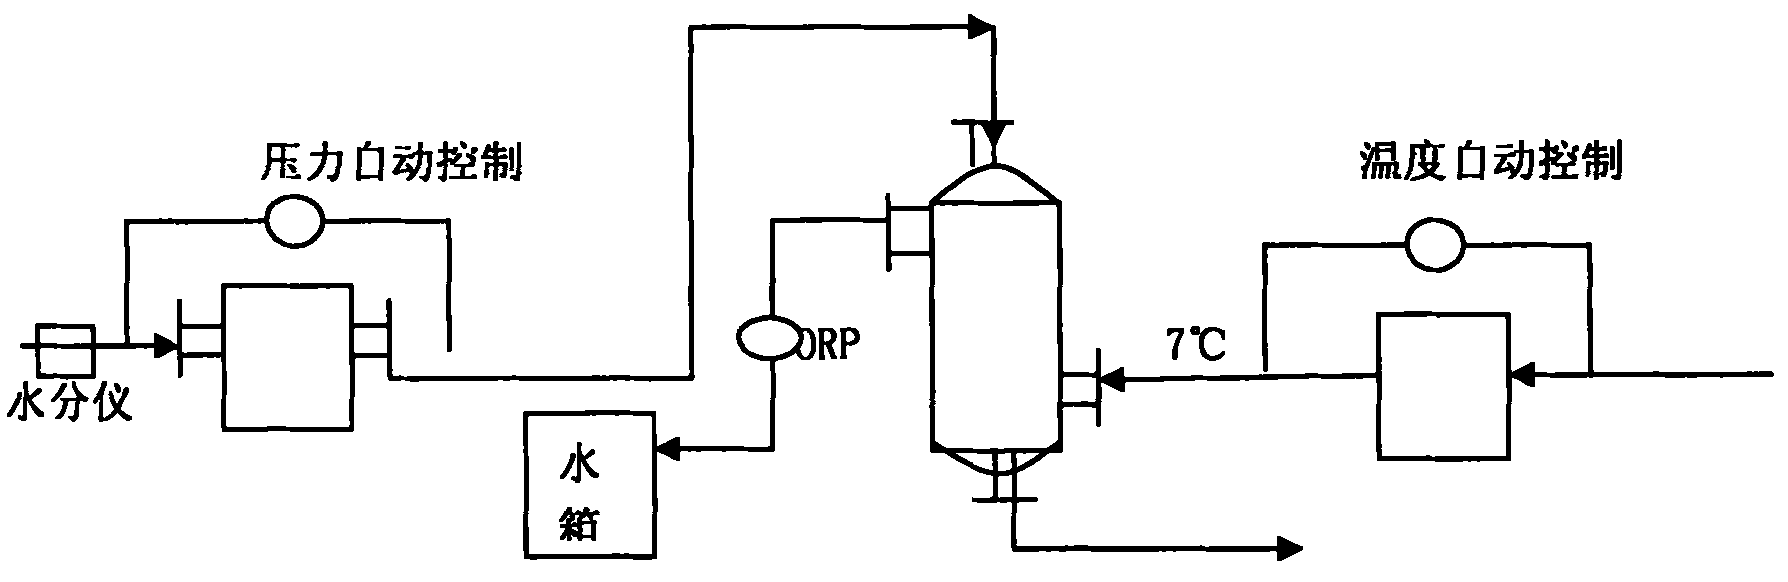 Technology for liquefying chlorine through medium-temperature and medium-pressure method